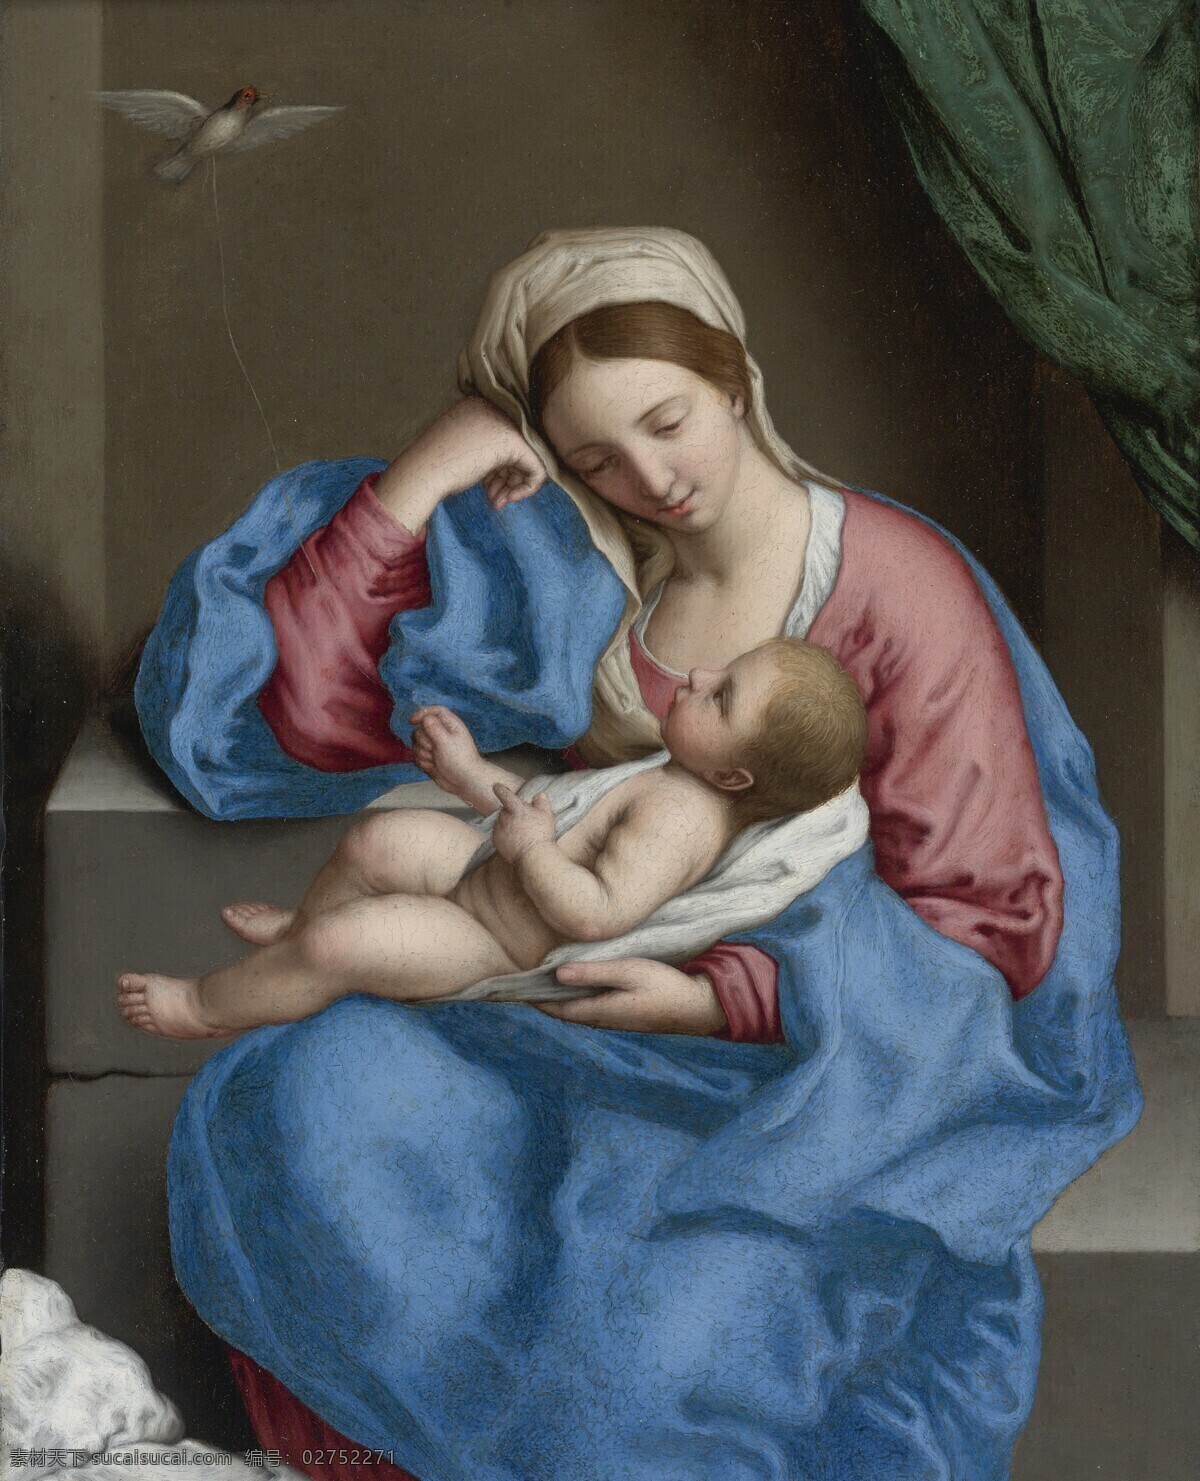 圣母与圣婴 圣母玛丽娅 圣婴耶稣 母子亲情 宗教油画 古典油画 油画 绘画书法 文化艺术